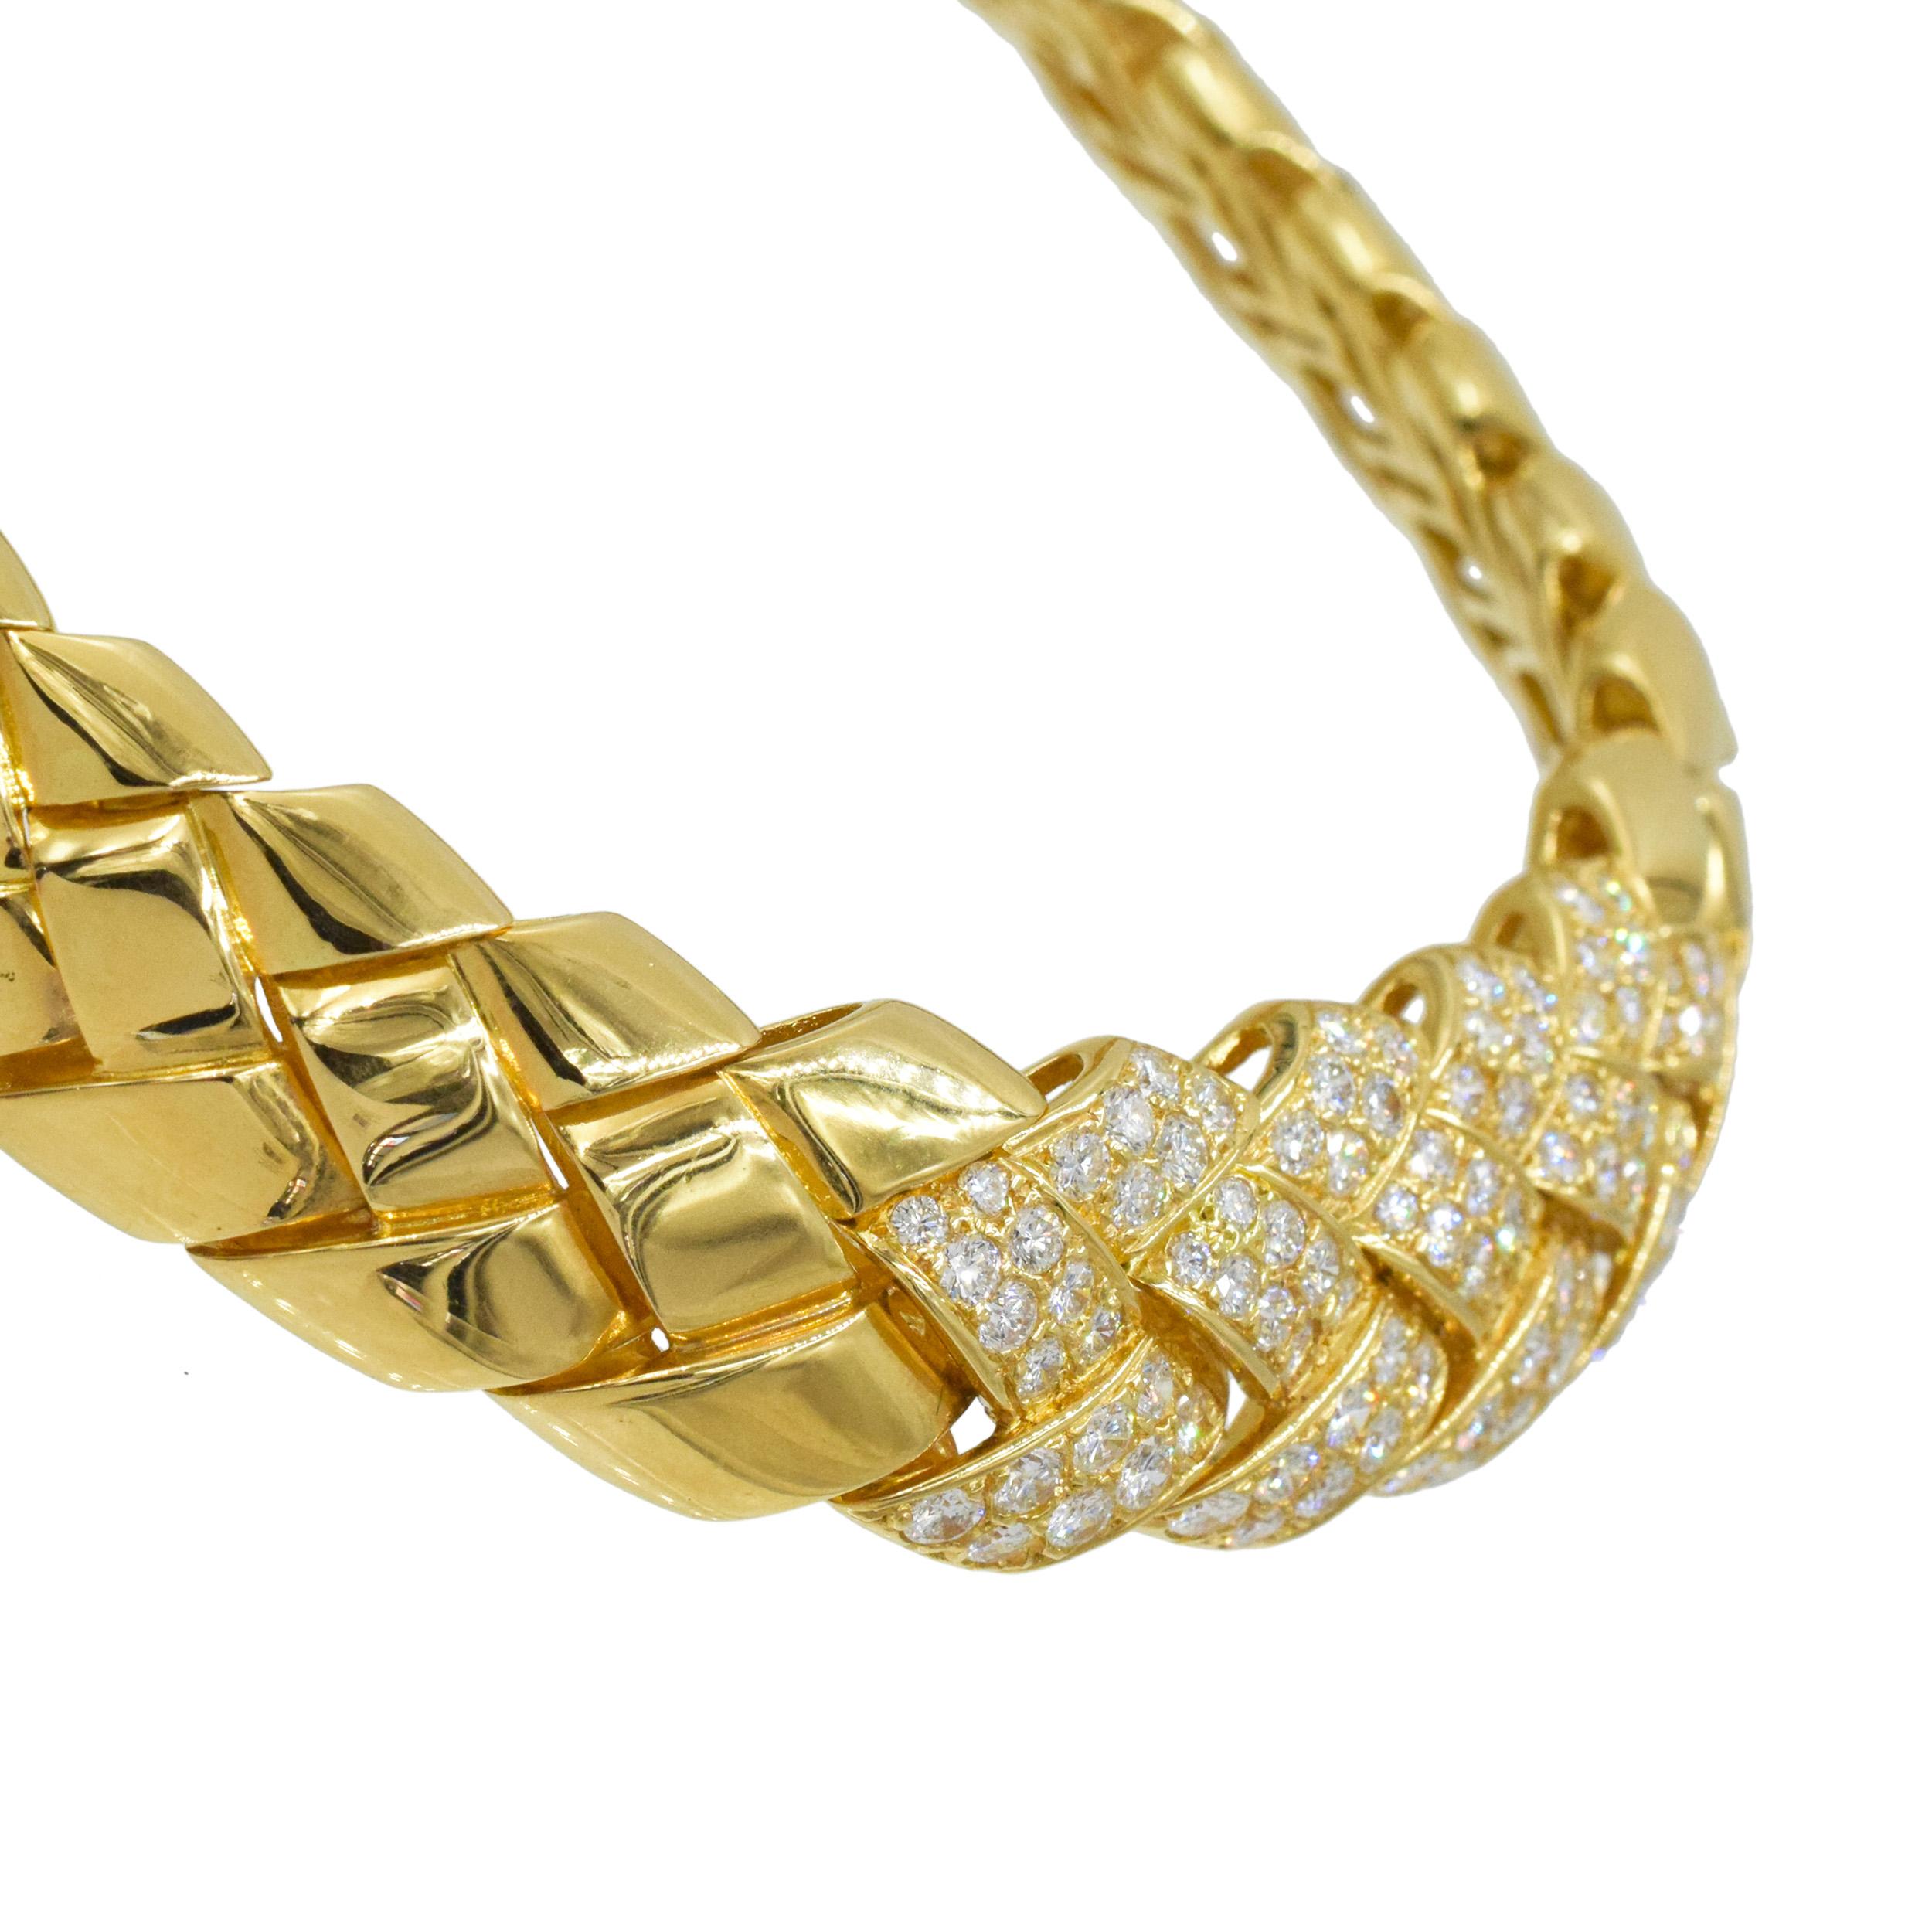 Collier Van Cleef & Arpels en or jaune et diamants Ce collier a un motif tissé avec 96 diamants ronds pesant environ 6 carats, tous sertis dans de l'or jaune 18k.  l'or jaune. Signé Van Cleef & Arpels,
 750, numéro de série xxxx
Fabriqué en France,